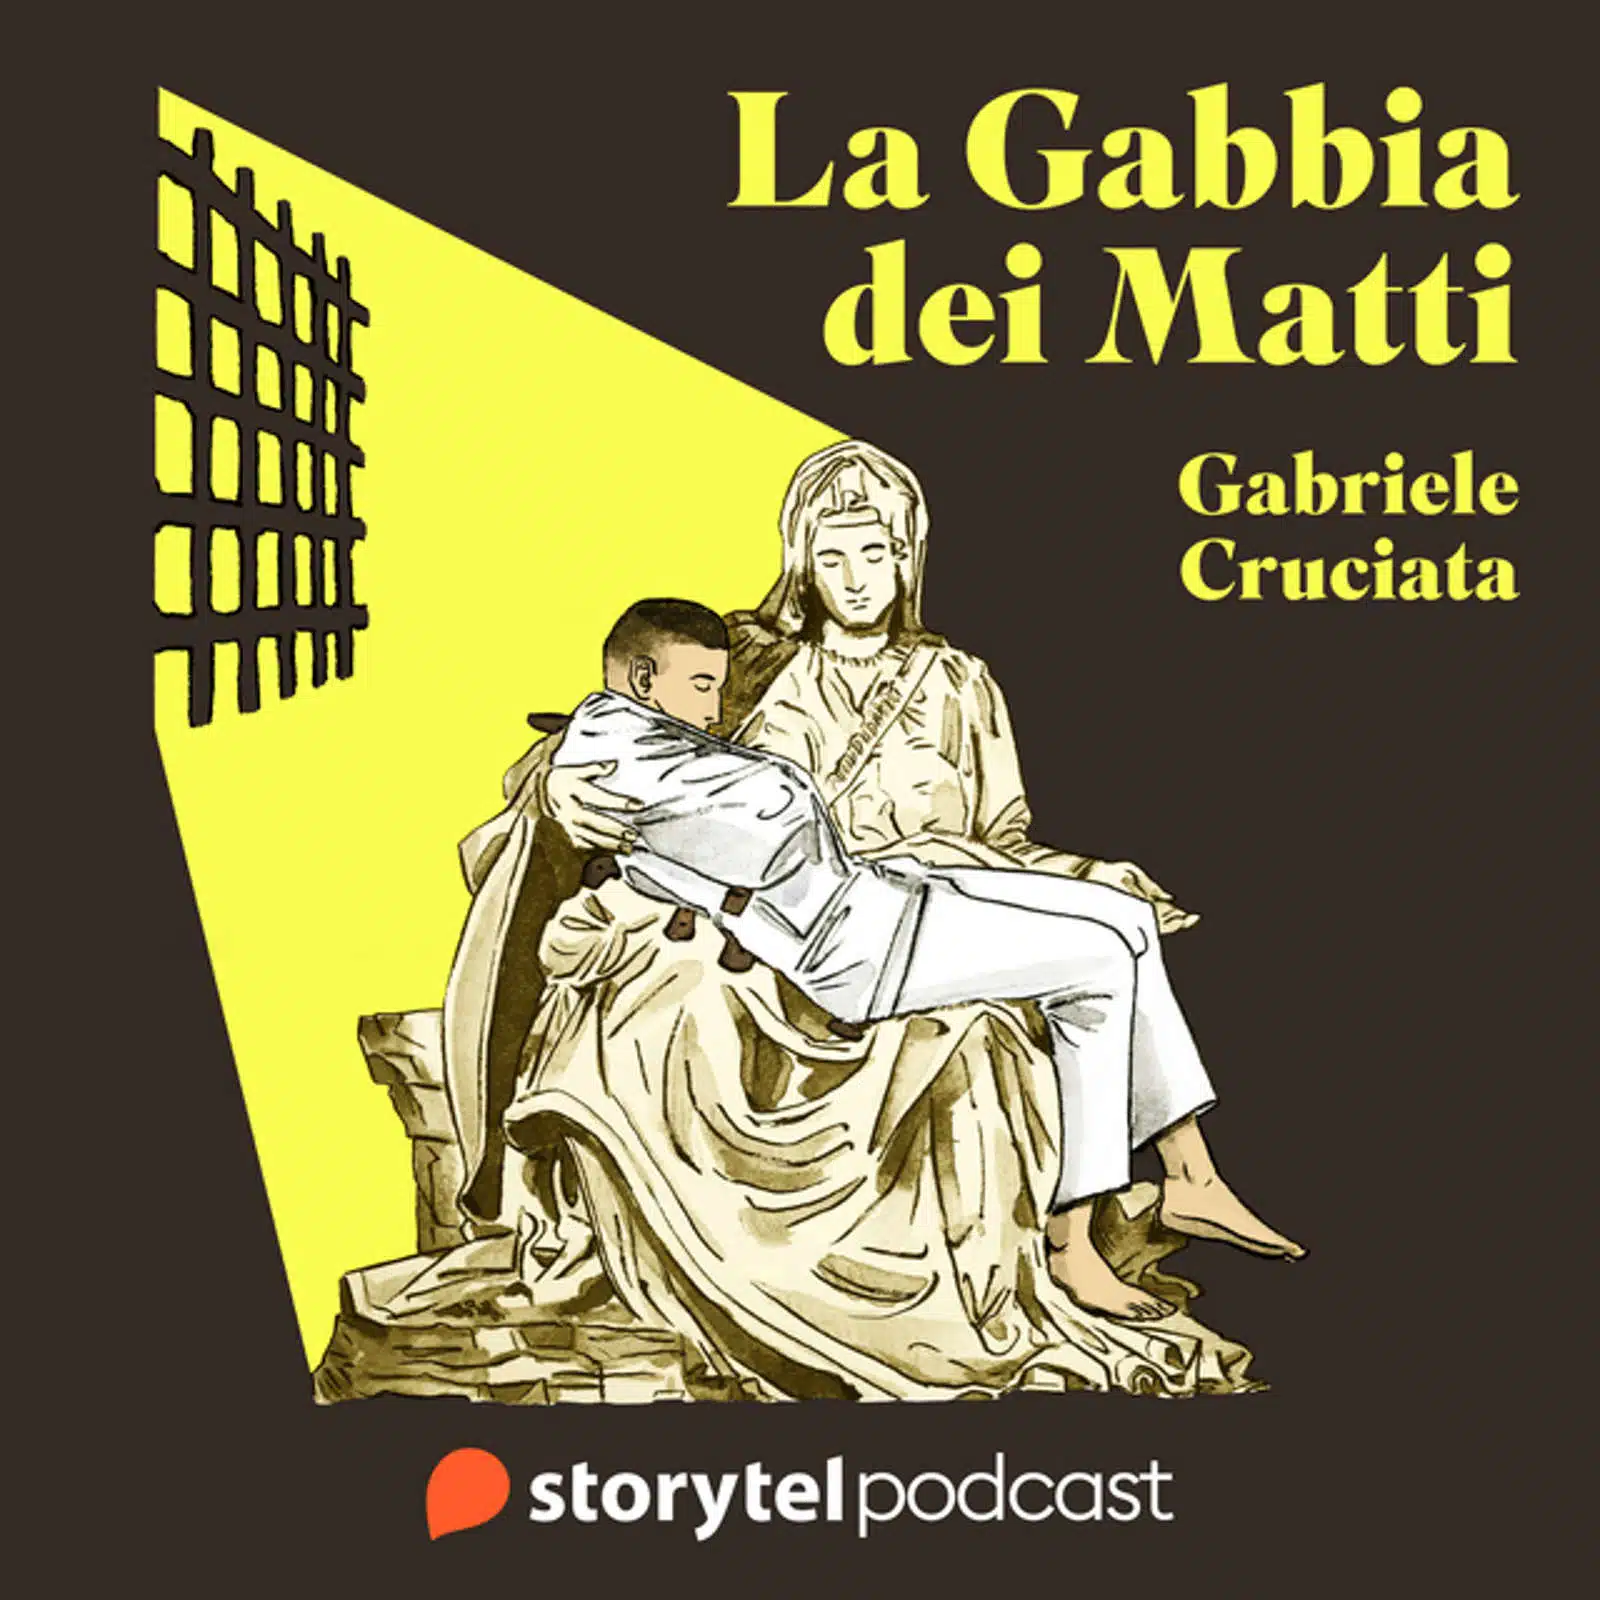 La Gabbia dei Matti storia dei manicomi in Italia Recensione del Podcast Featured